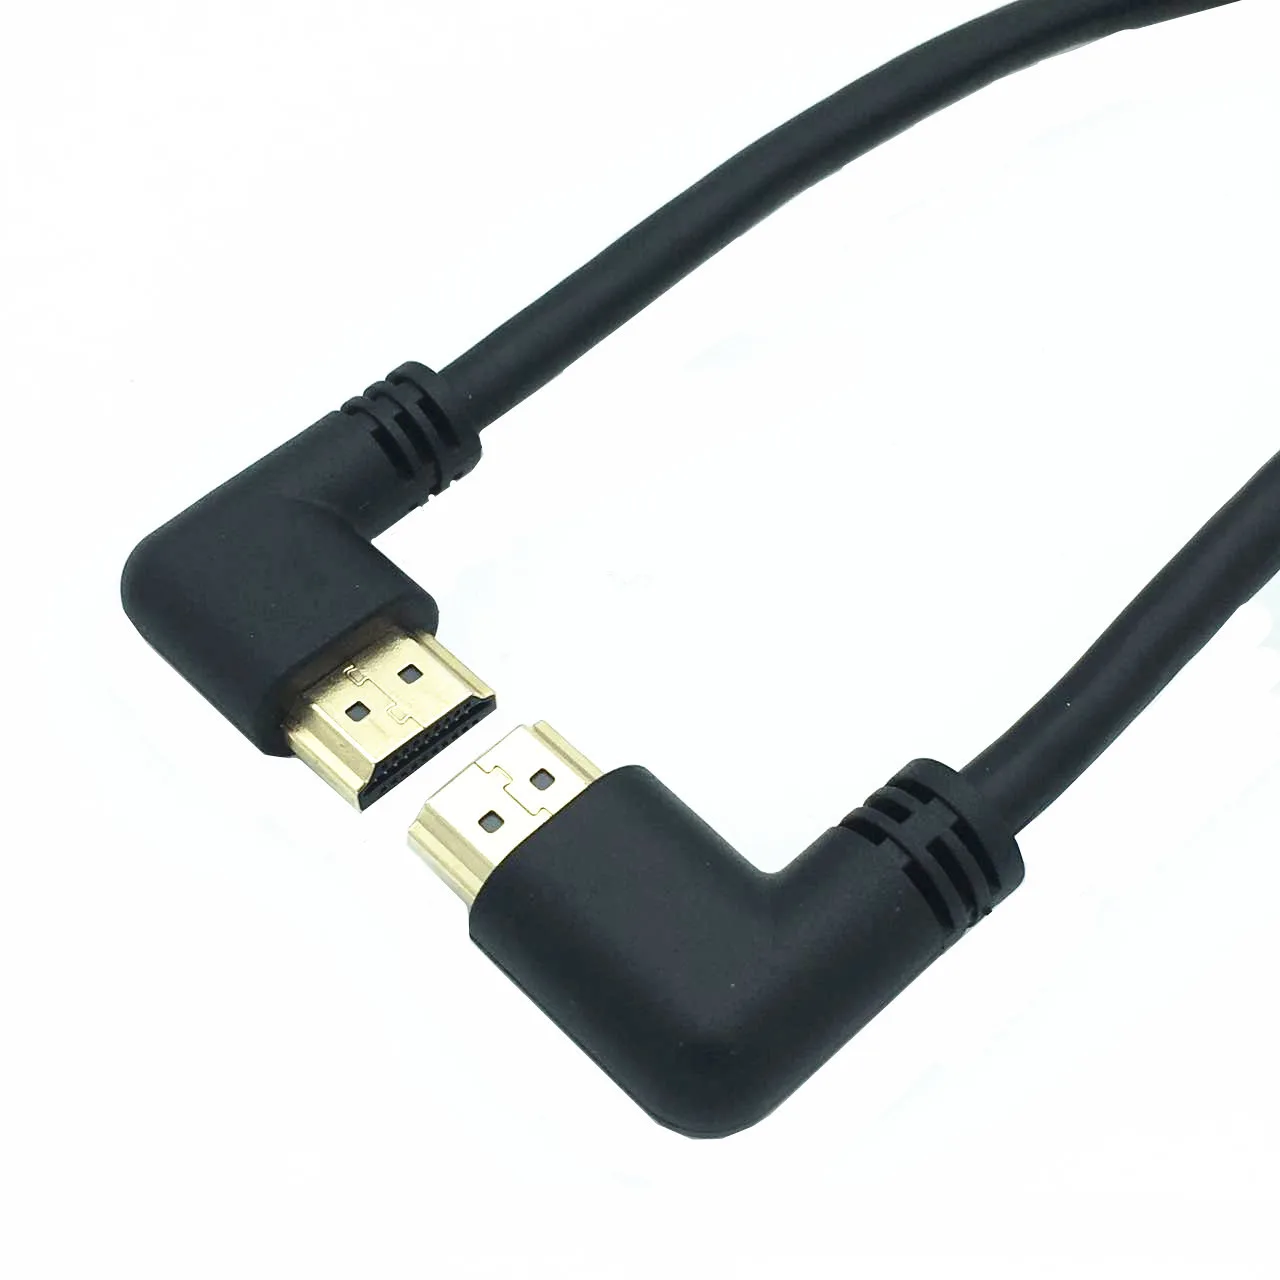 La stânga sau la Dreapta în Unghi compatibil HDMI de sex Masculin la Dreapta la Stânga Cot de sex Masculin Cablu de extensie 15cm 1m 50cm, 2.0 V unghi cablu 4K*2K @60HZ 1